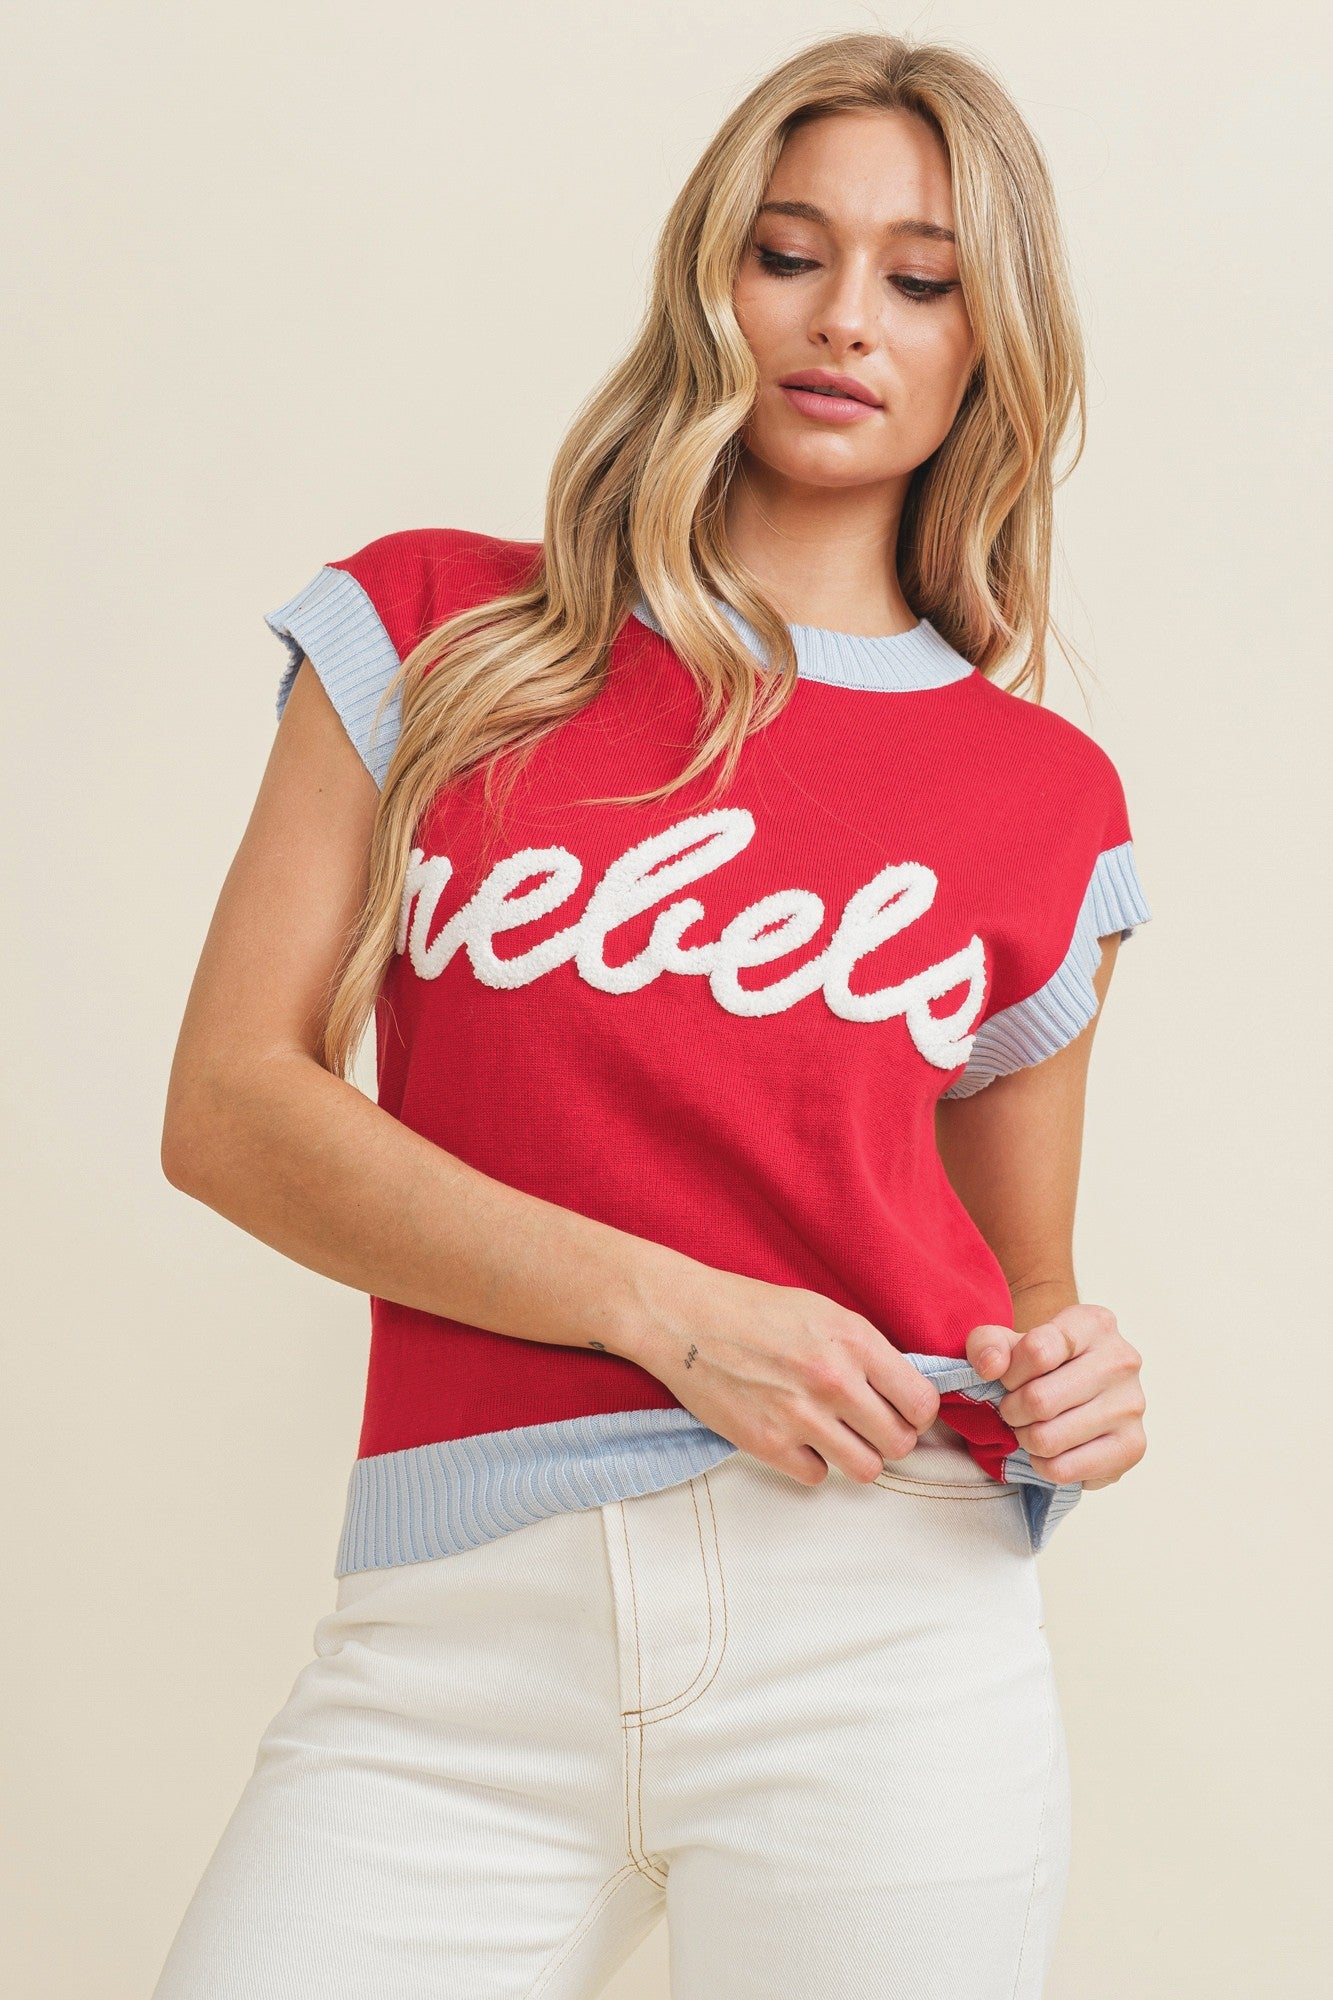 "Rebels" Appliqué Short Sleeve Sweater Top